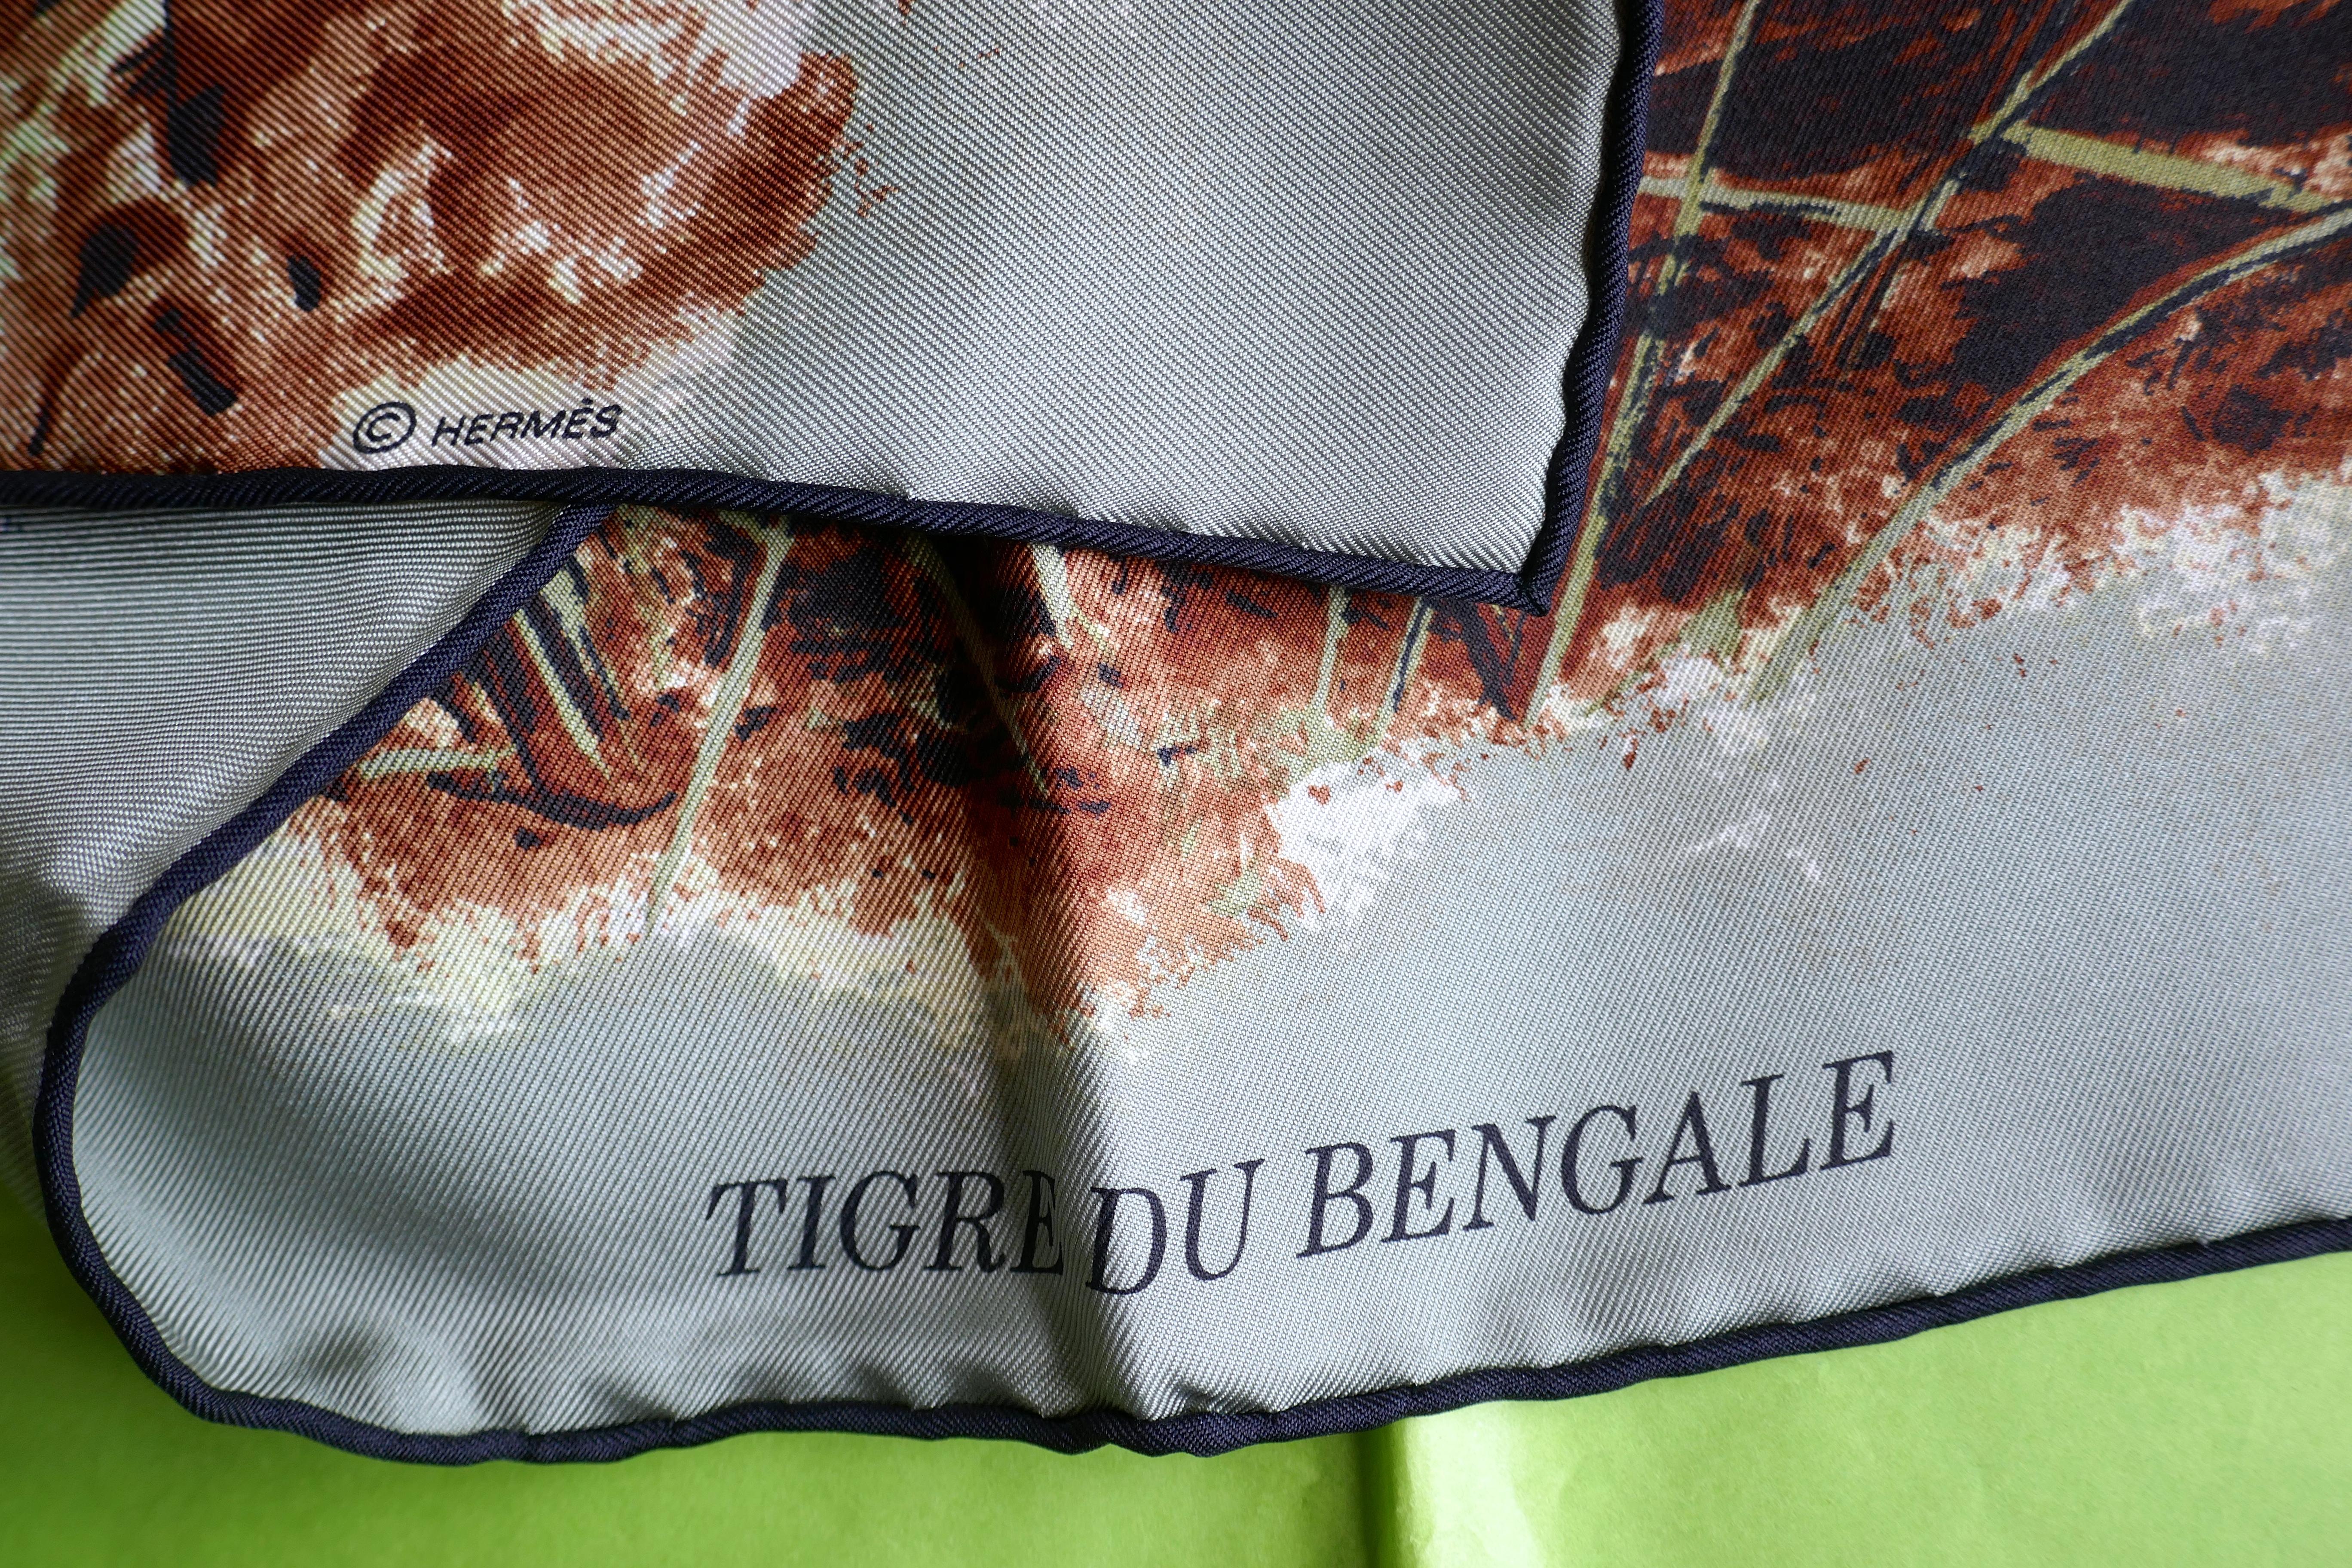 Très rare écharpe en soie Hermès Le Tigre du Benagale de Robert Dallet 7